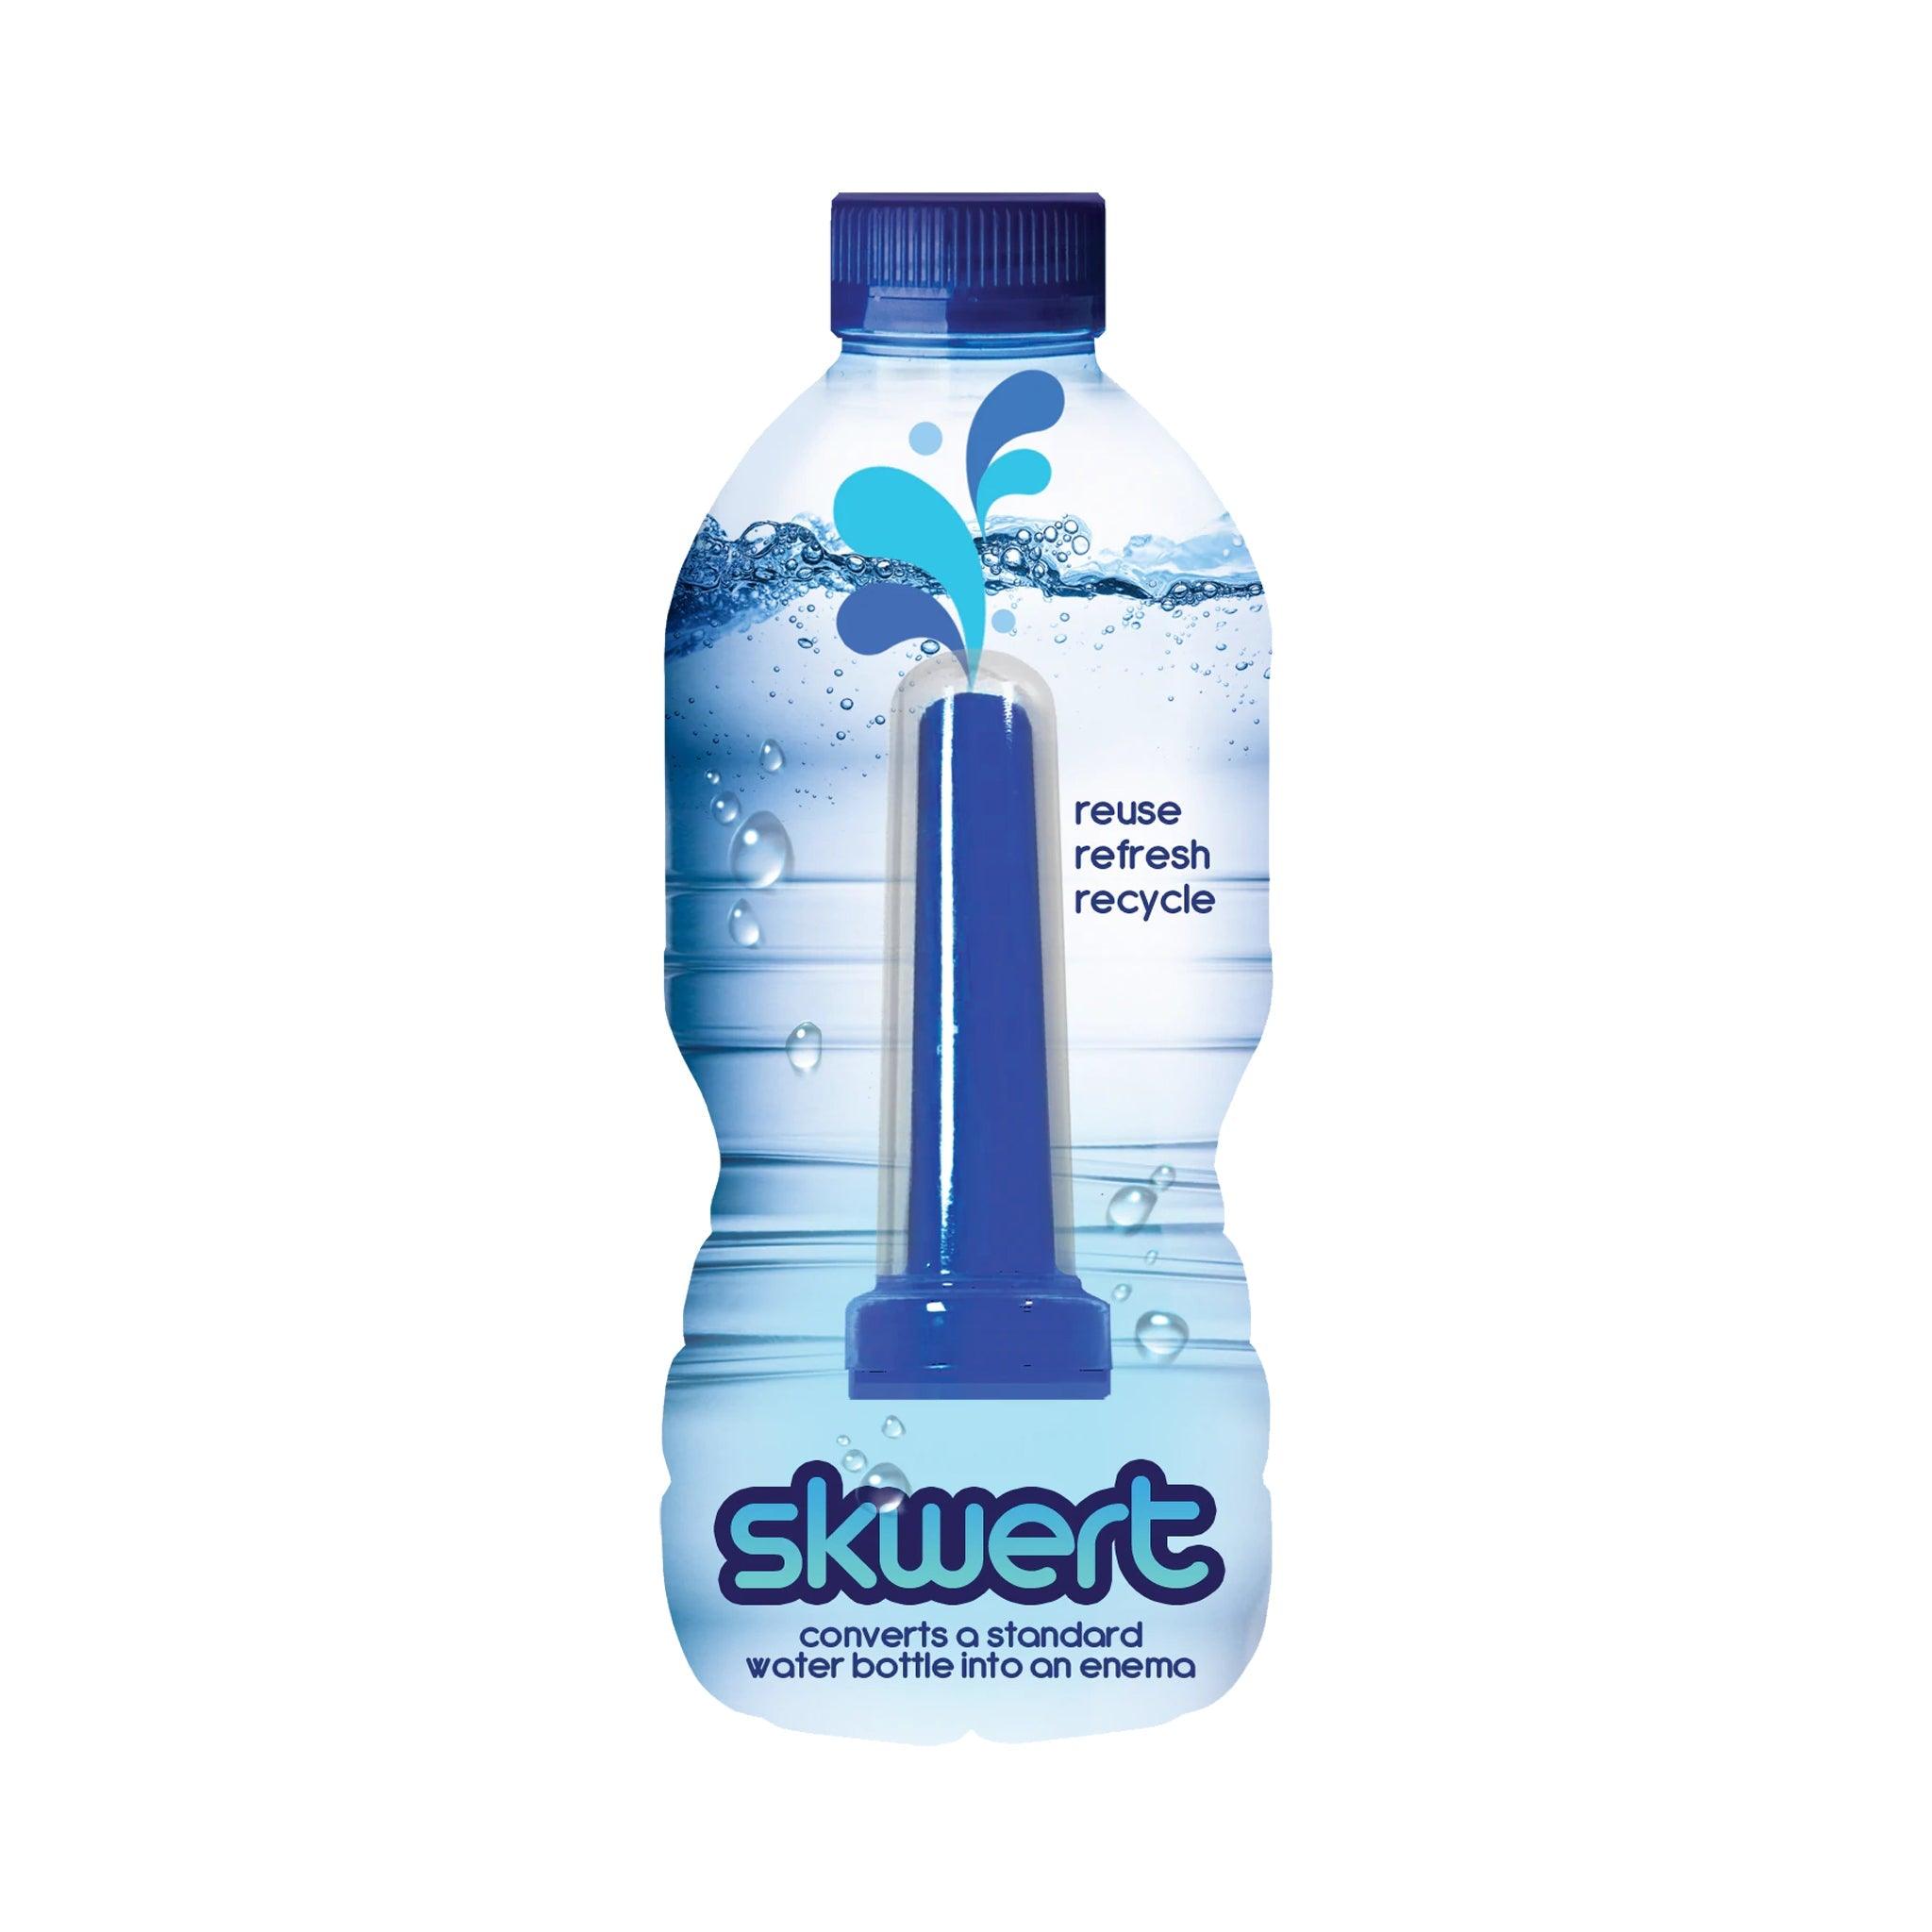 http://www.cheaplubes.com/cdn/shop/products/Boneyard-Skwert-Water-Bottle-enima-4.jpg?v=1689987755